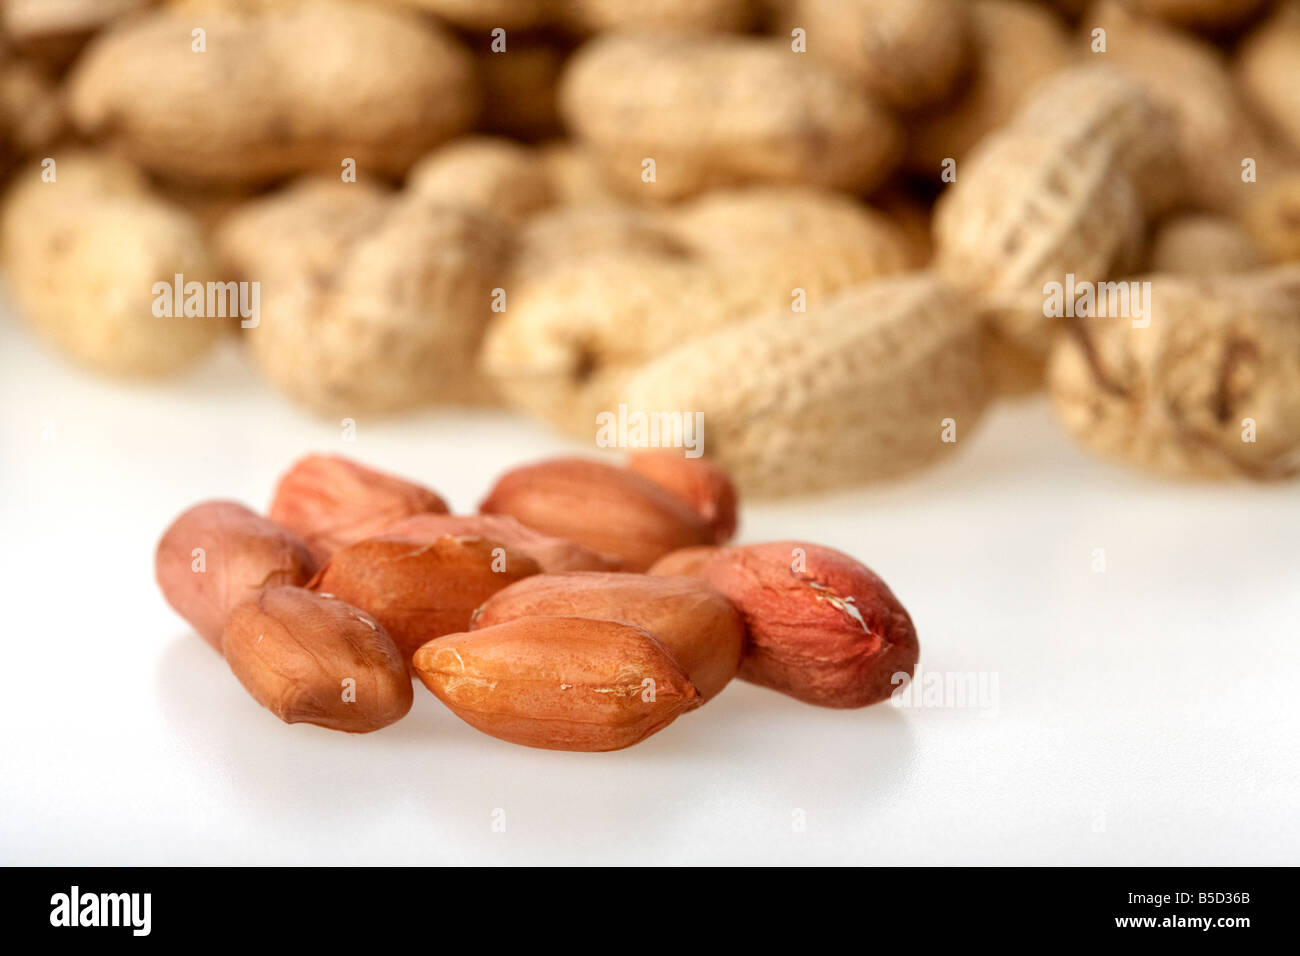 Tas d'arachides dans leurs coquilles et quelques fruits secs décortiqués Banque D'Images